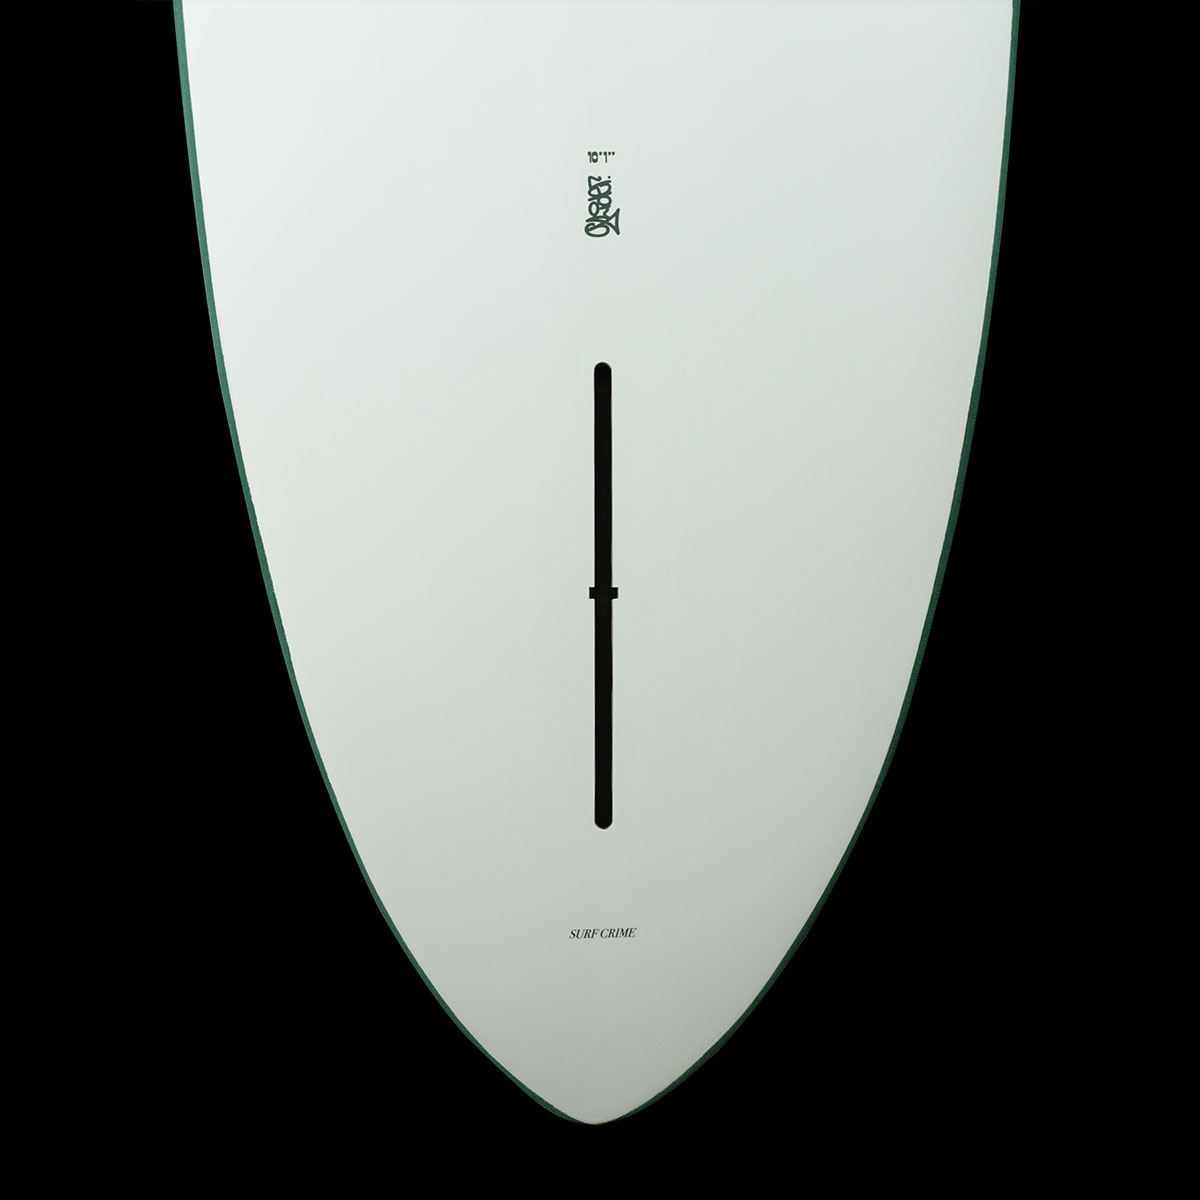 クライム サーフボード ソフトボード 10.1 グライダー ロングボード シングルフィン サーフィン グリーン 正規品 CRIME SURFBOARDS  SOFTBOARDS GLIDER 【54200】